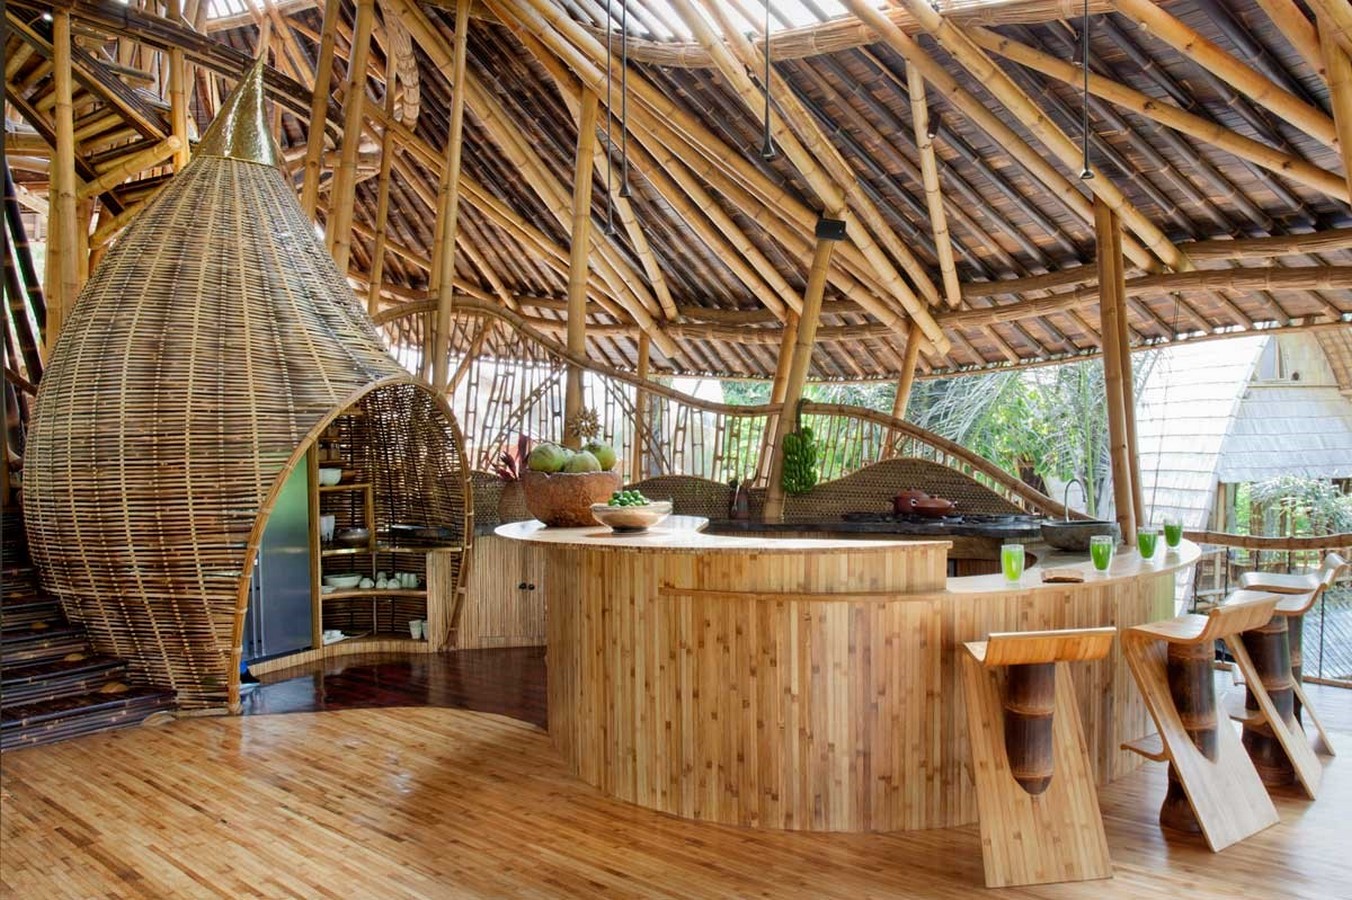 Comment le Bambou redéfinit-il l'architecture ces derniers temps?- Sheet3